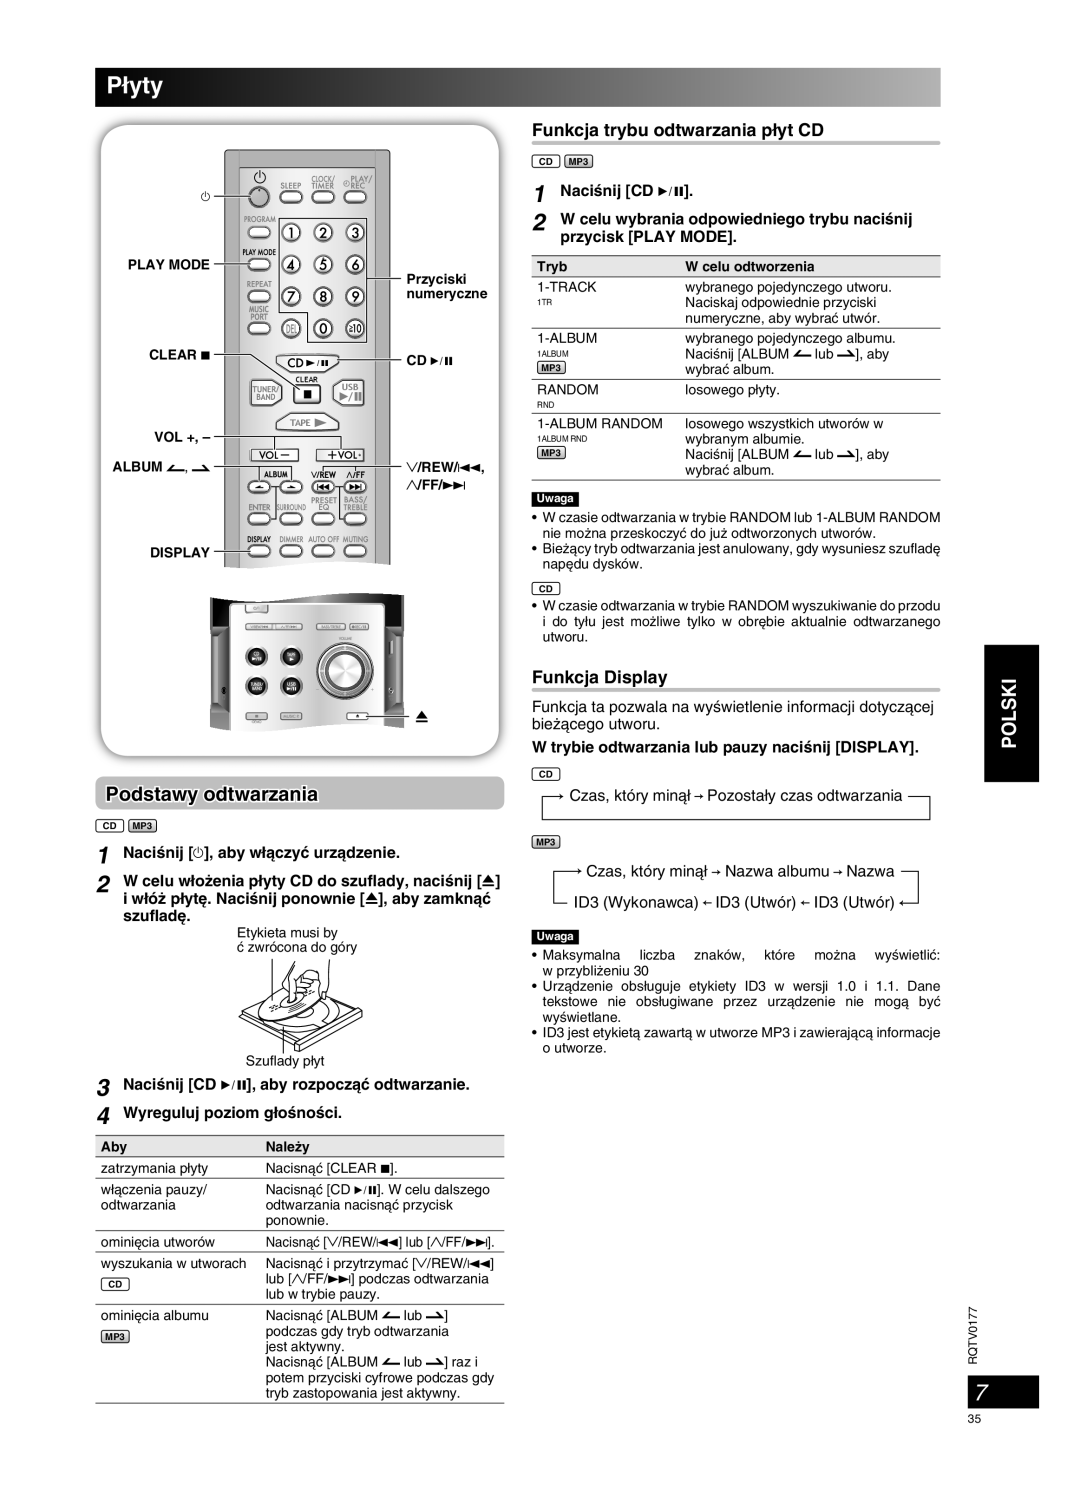 Panasonic SC-PM45 manual P∏yty, Podstawy odtwarzania, Polski 